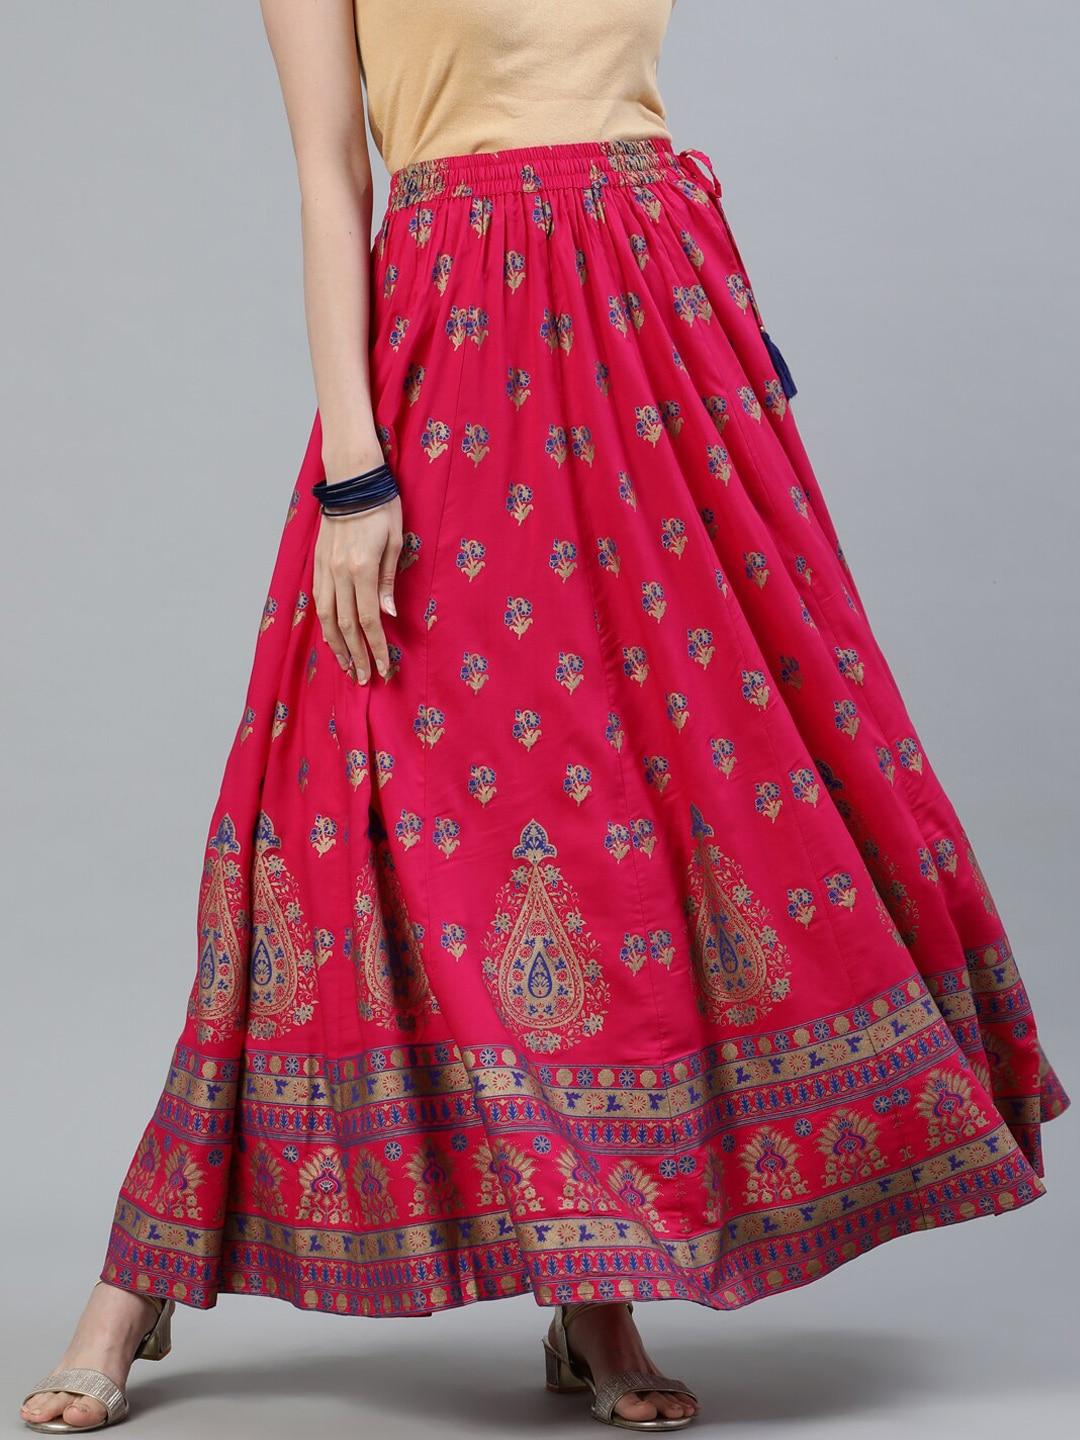 jaipur-kurti-women-pink-printed-maxi-flared-skirt